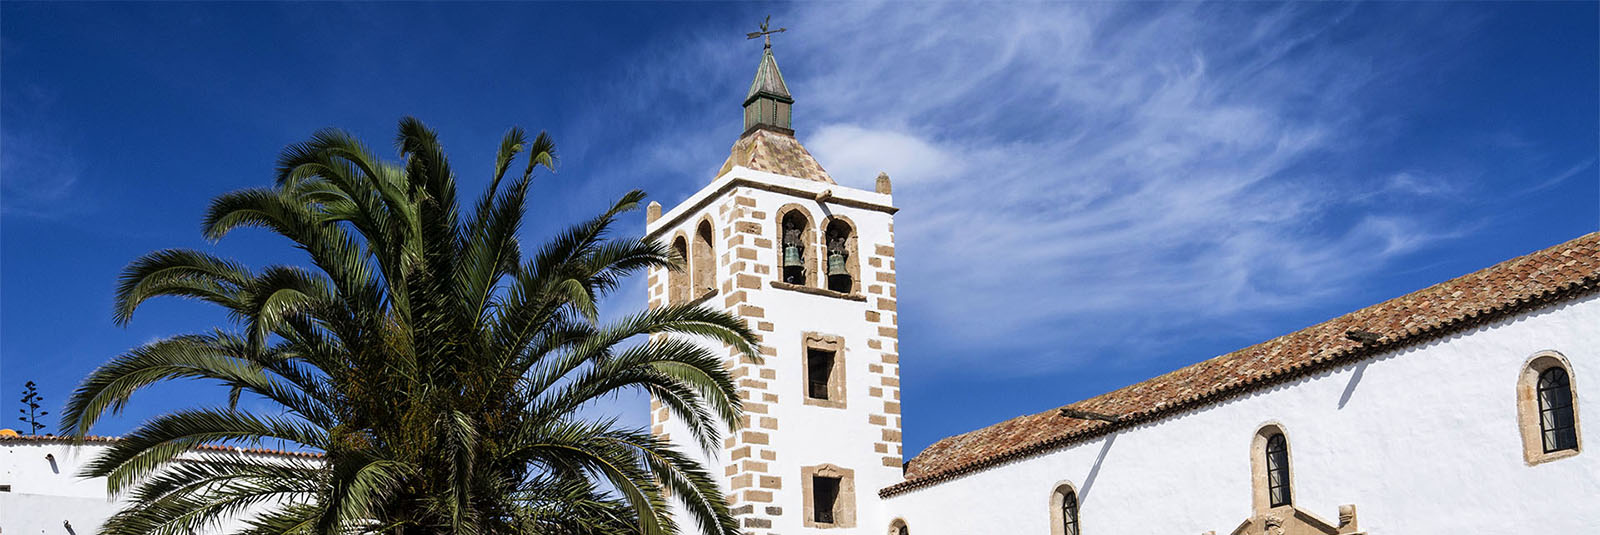 Sehenswürdigkeiten Fuerteventura – Kathedrale Santa Maria de Betancuria.